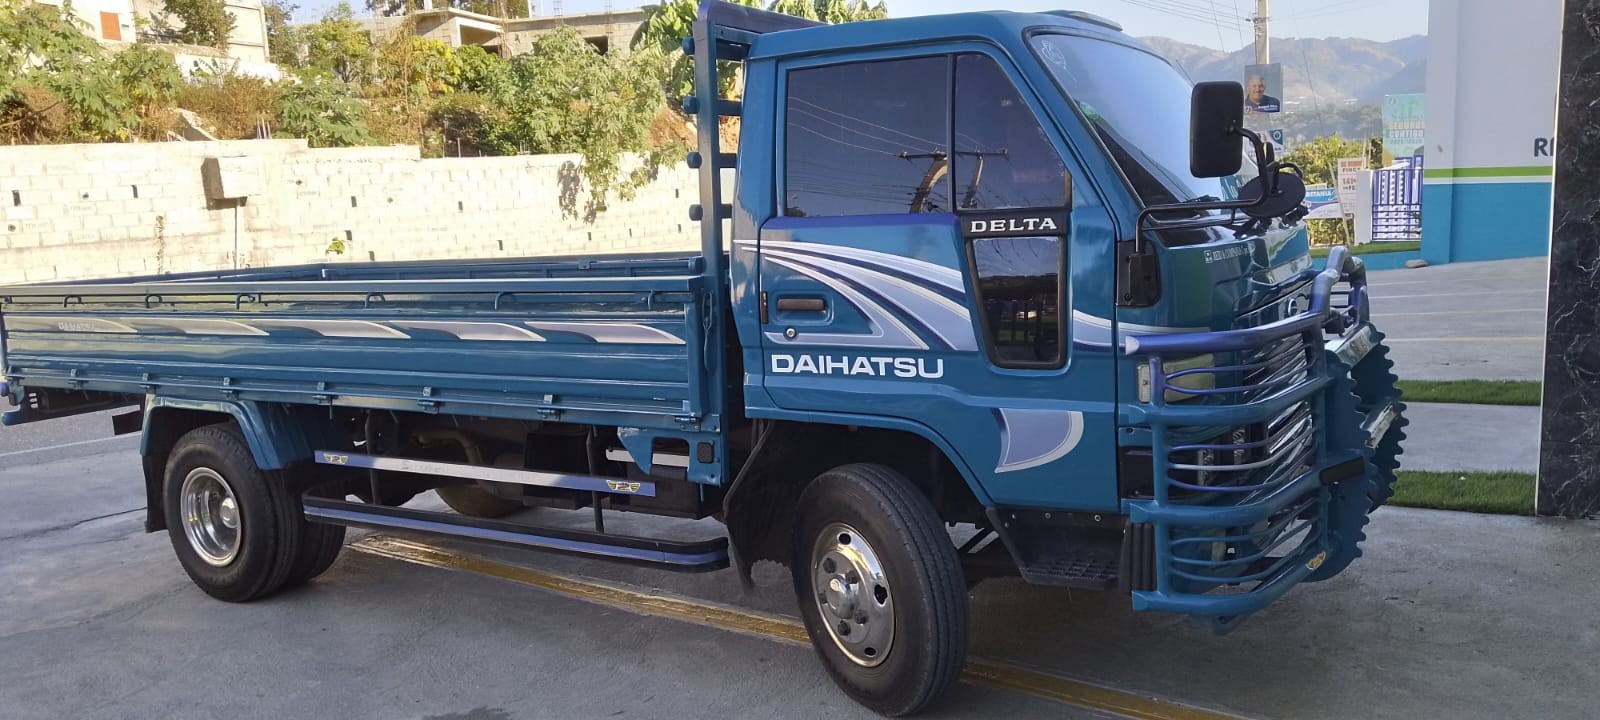 camiones y vehiculos pesados - Daihatsu Delta 2003 Cama Larga Cara Ancha